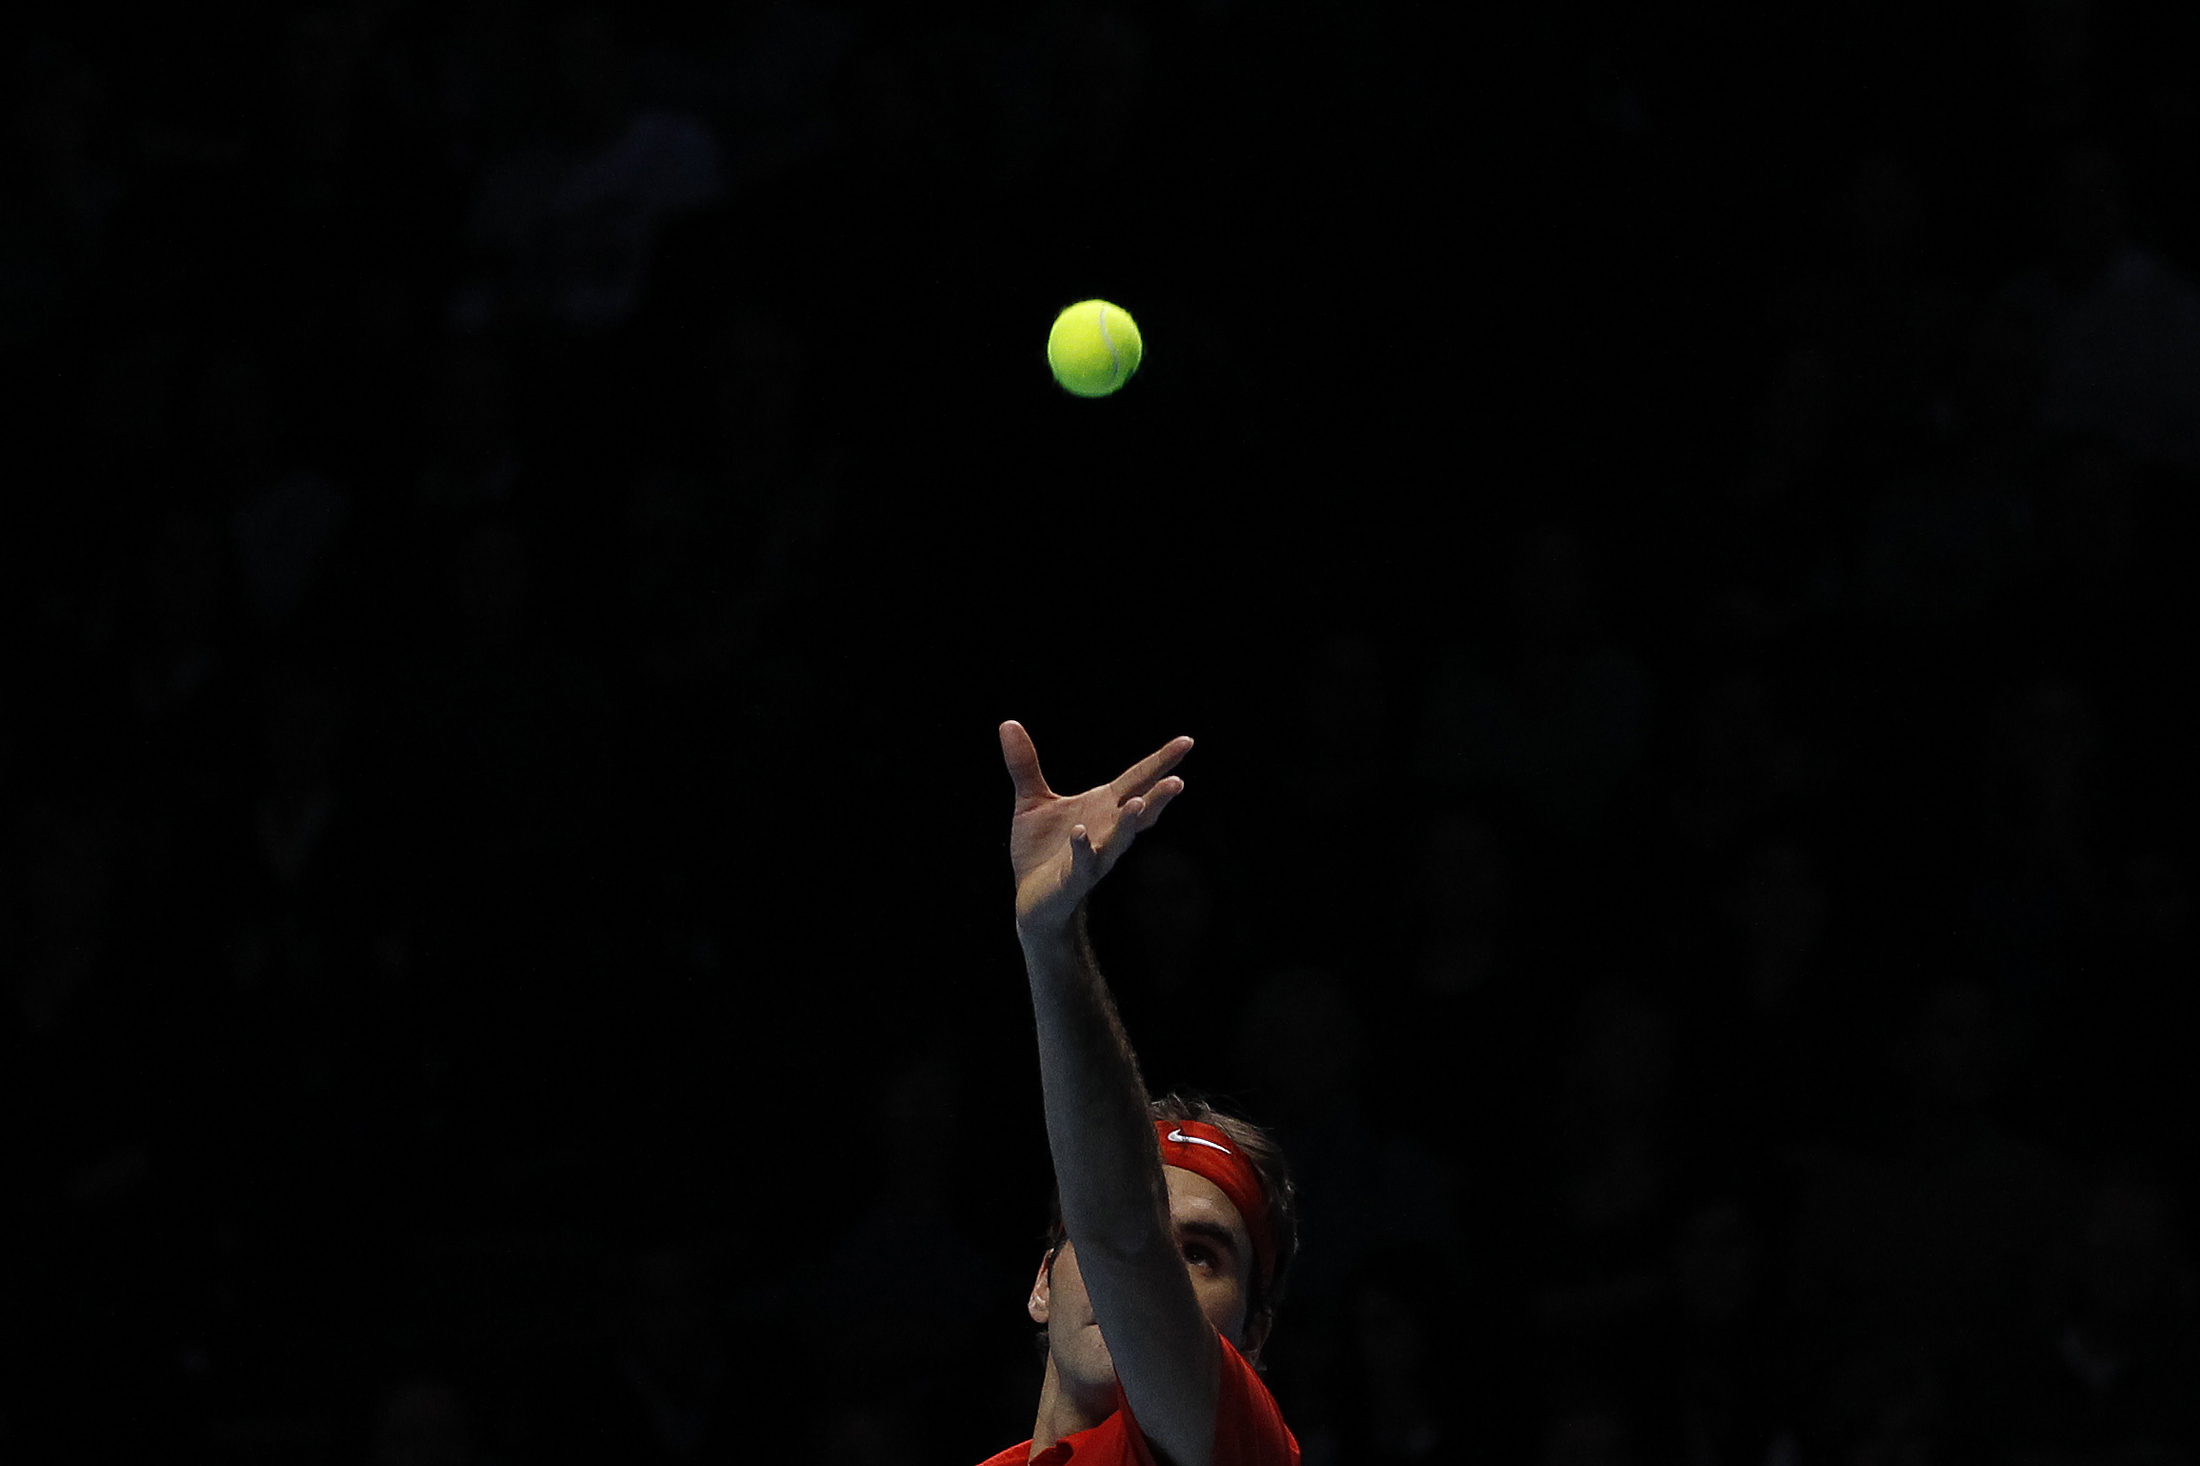 لاعب كرة مضرب يرفع الكرة قبل ضربها